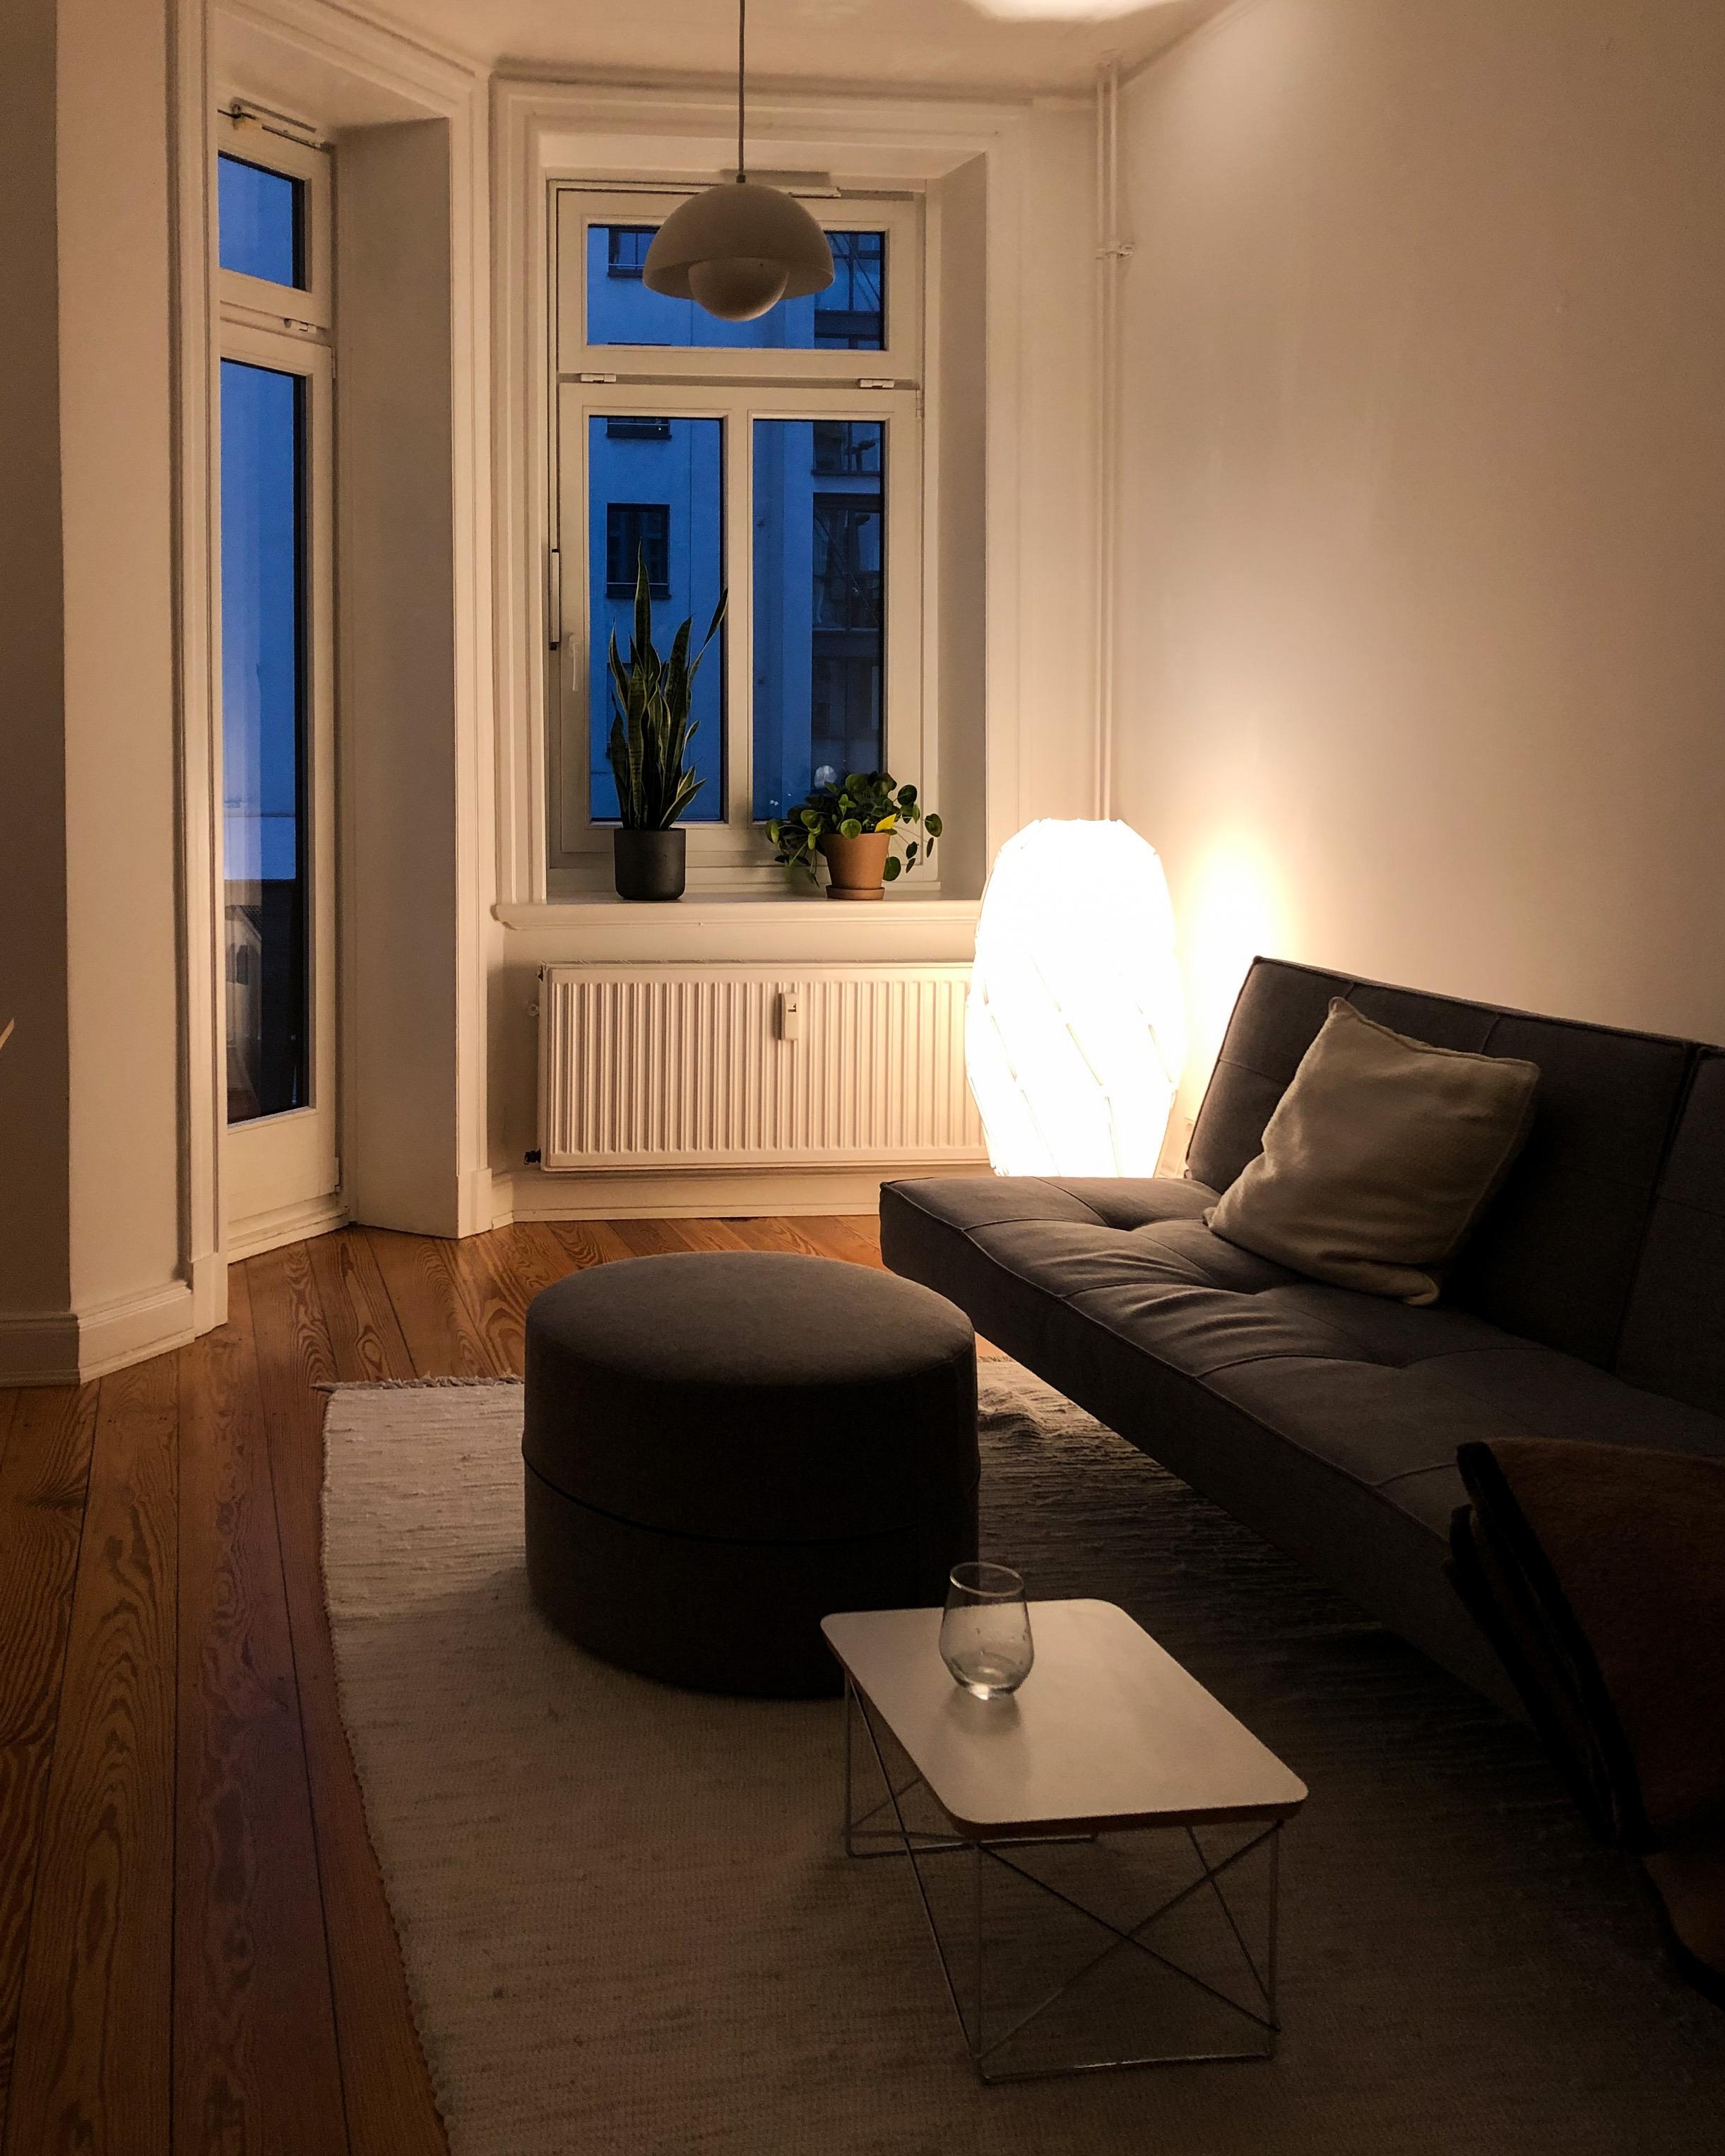 #wohnzimmer #altbauliebe #abendlicht #stehleuchte #cozy #hygge #minimalism #softminimalism #sofa #hamburginterior